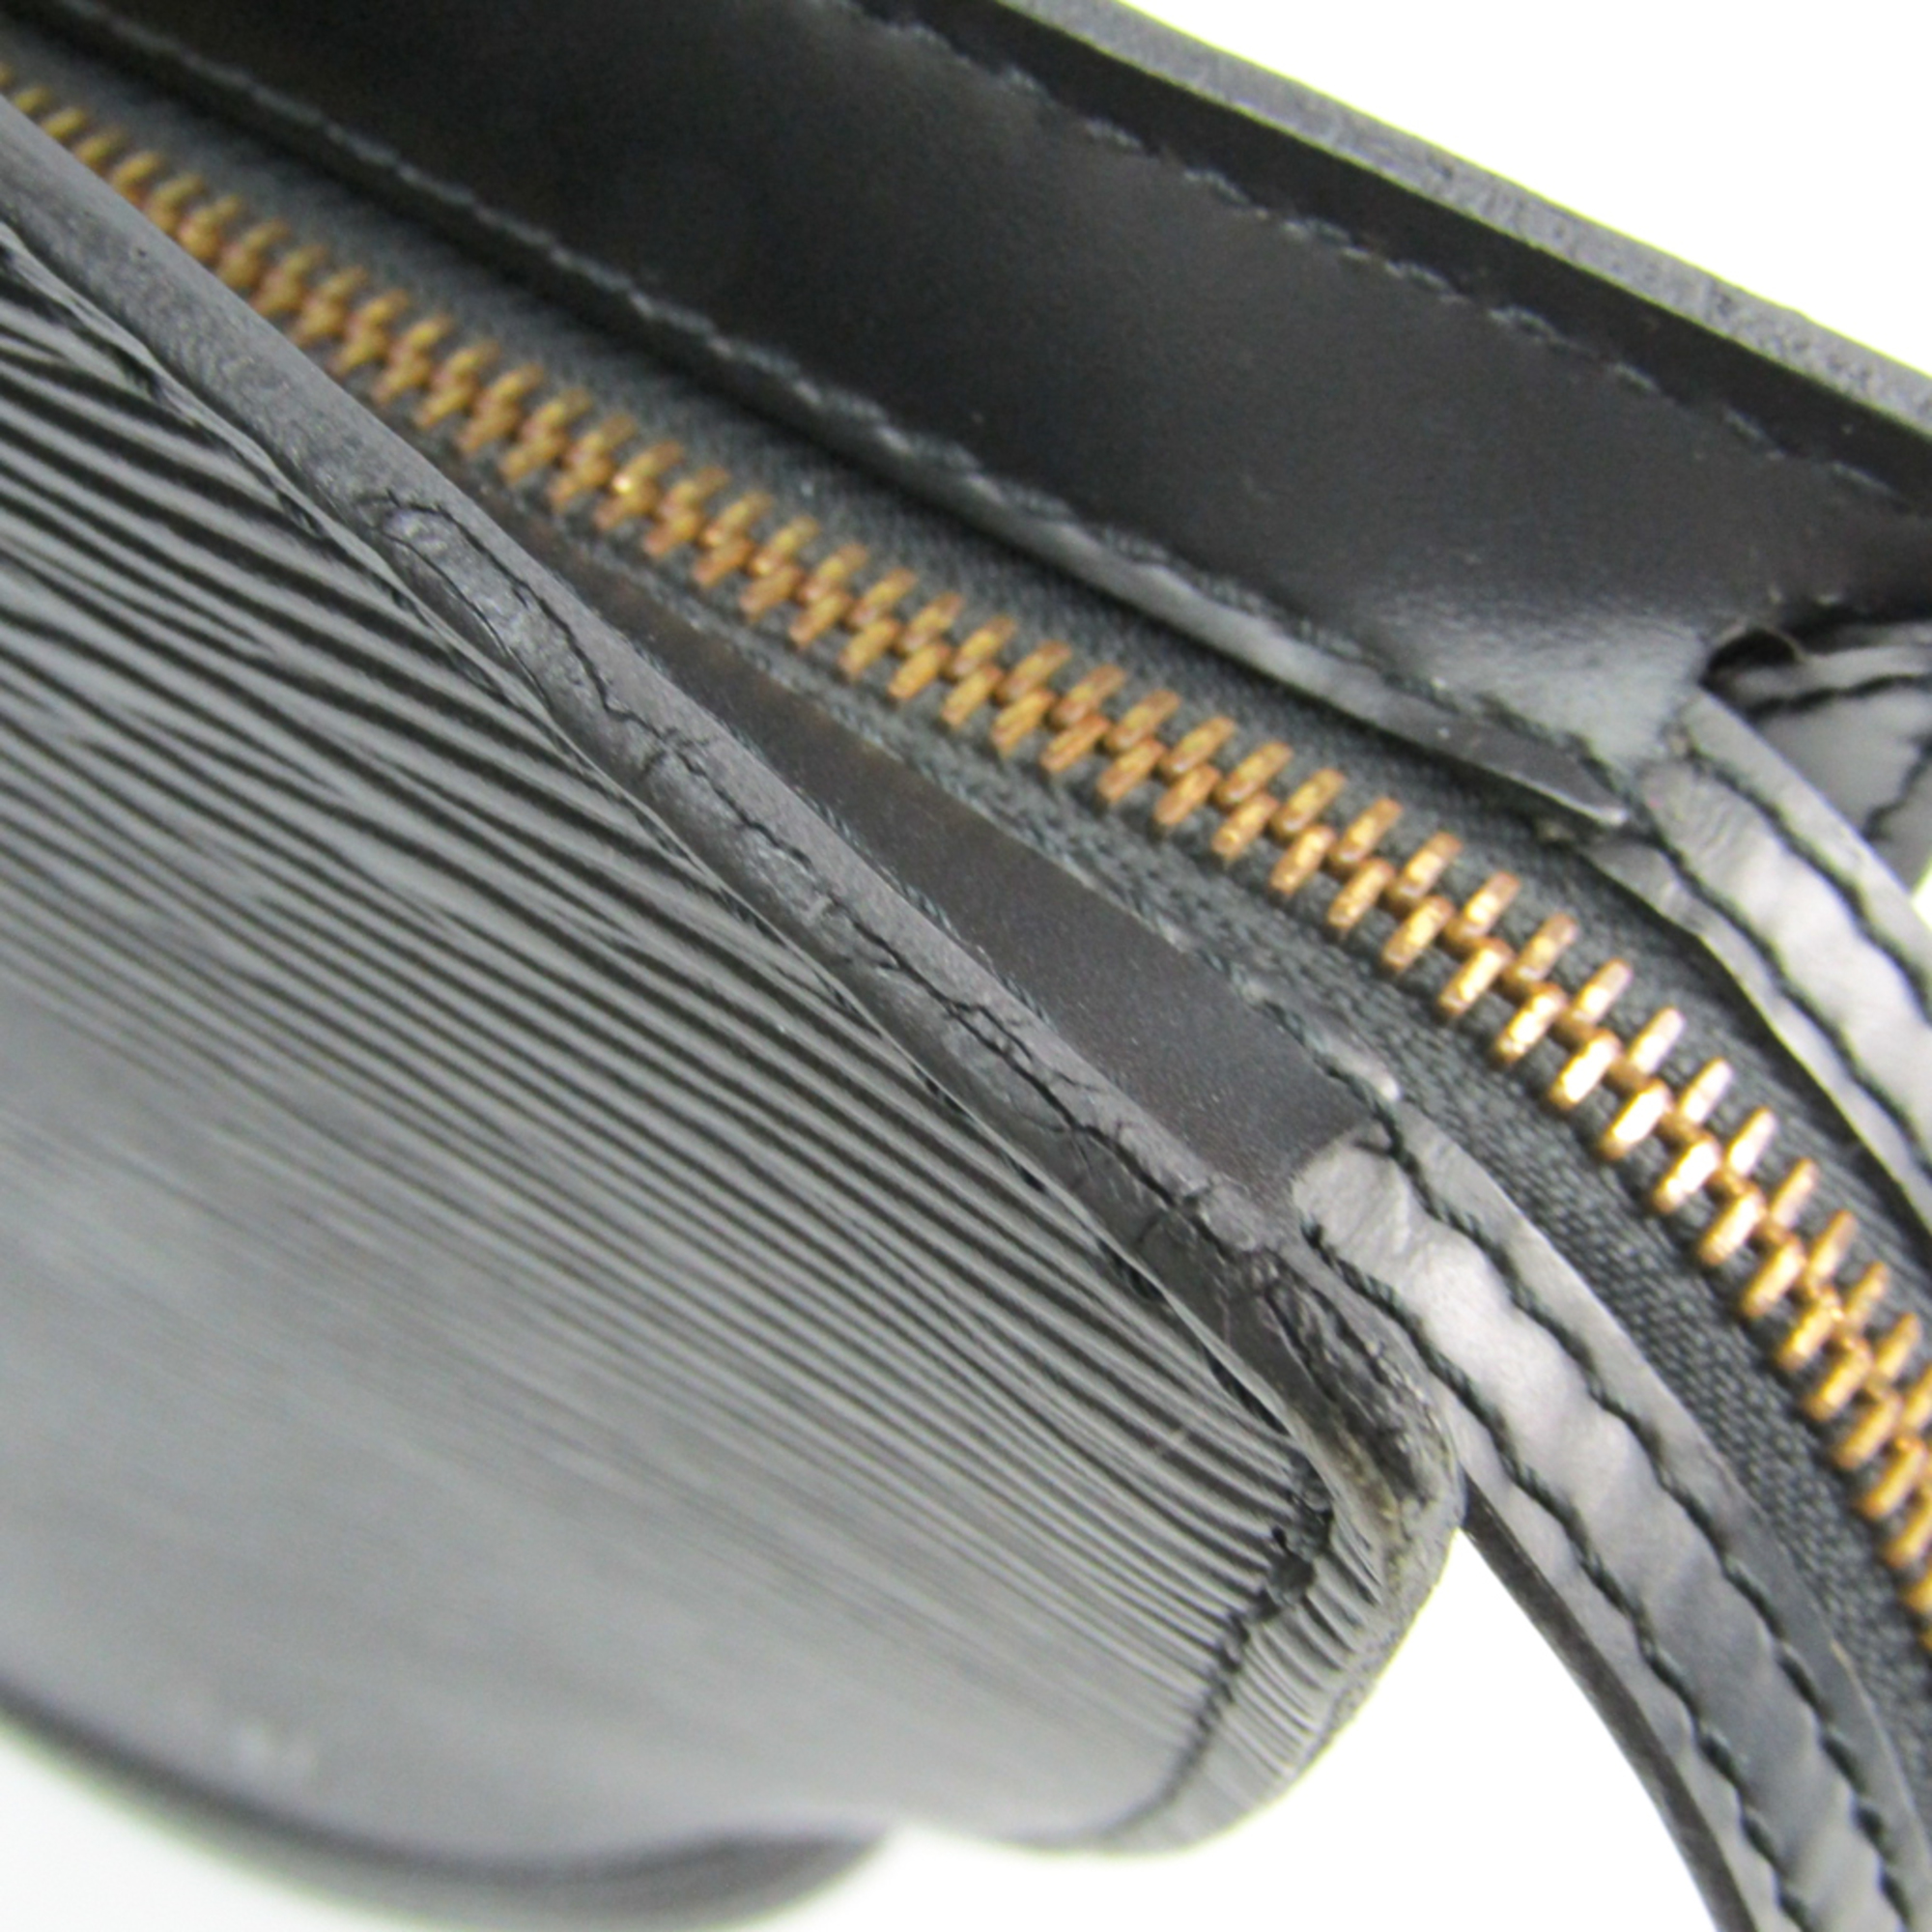 Louis Vuitton Epi Saint-Jacques M52272 Handbag Noir